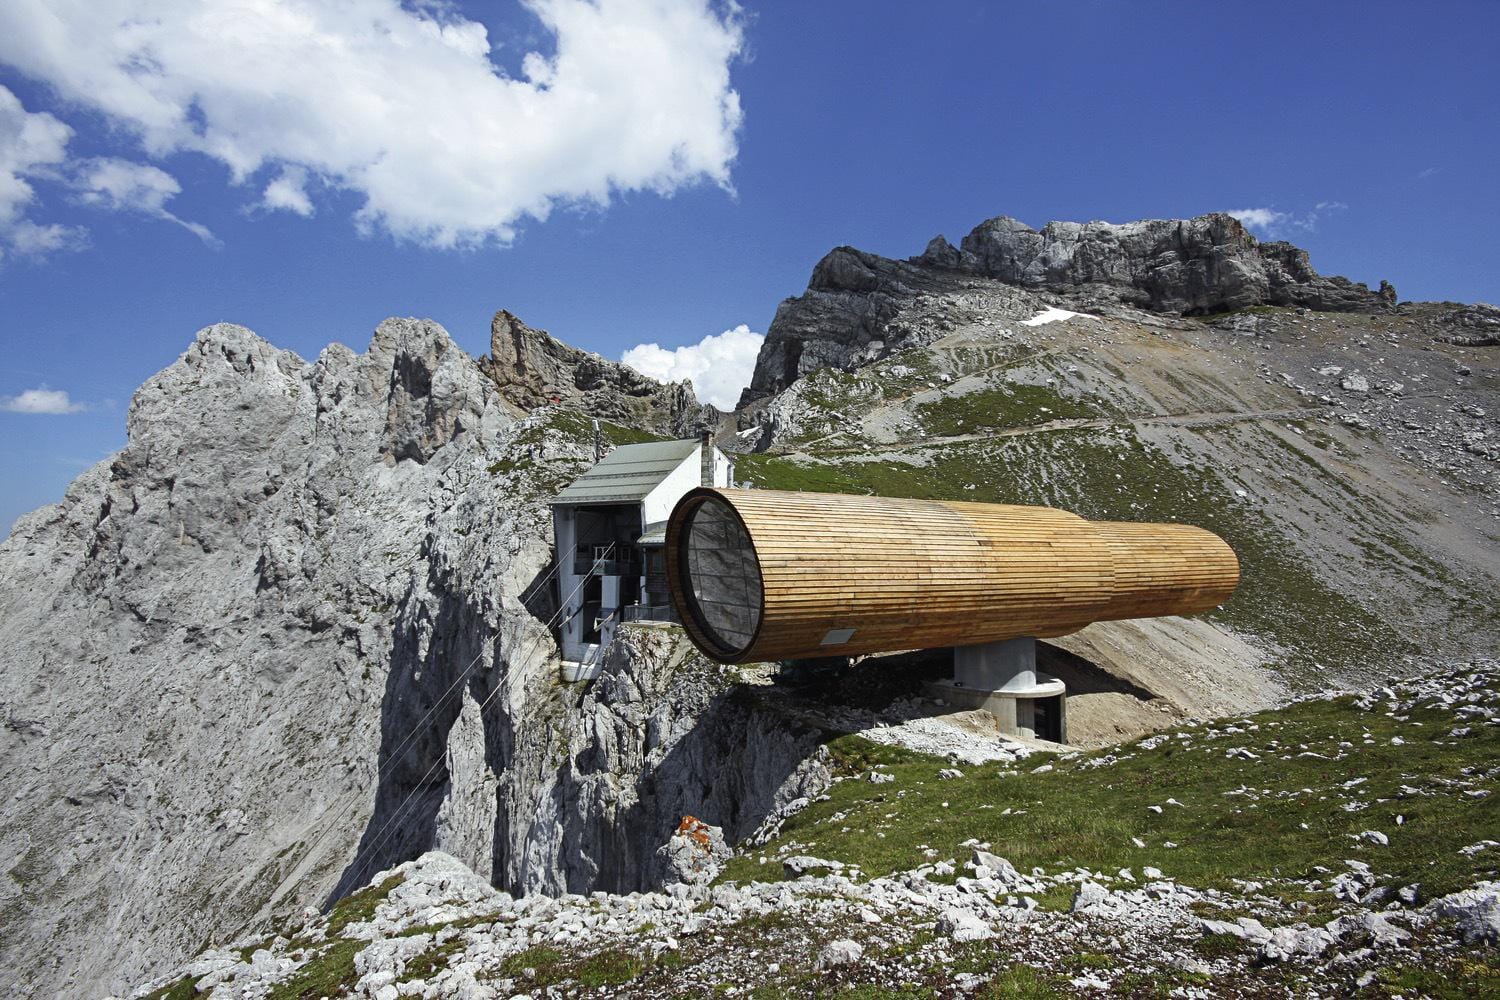 Gute Aussichten: Das überdimensionale Fernrohr an der Karwendelbahn beherbergt in seinem Inneren eine Ausstellung über die Bergwelt.